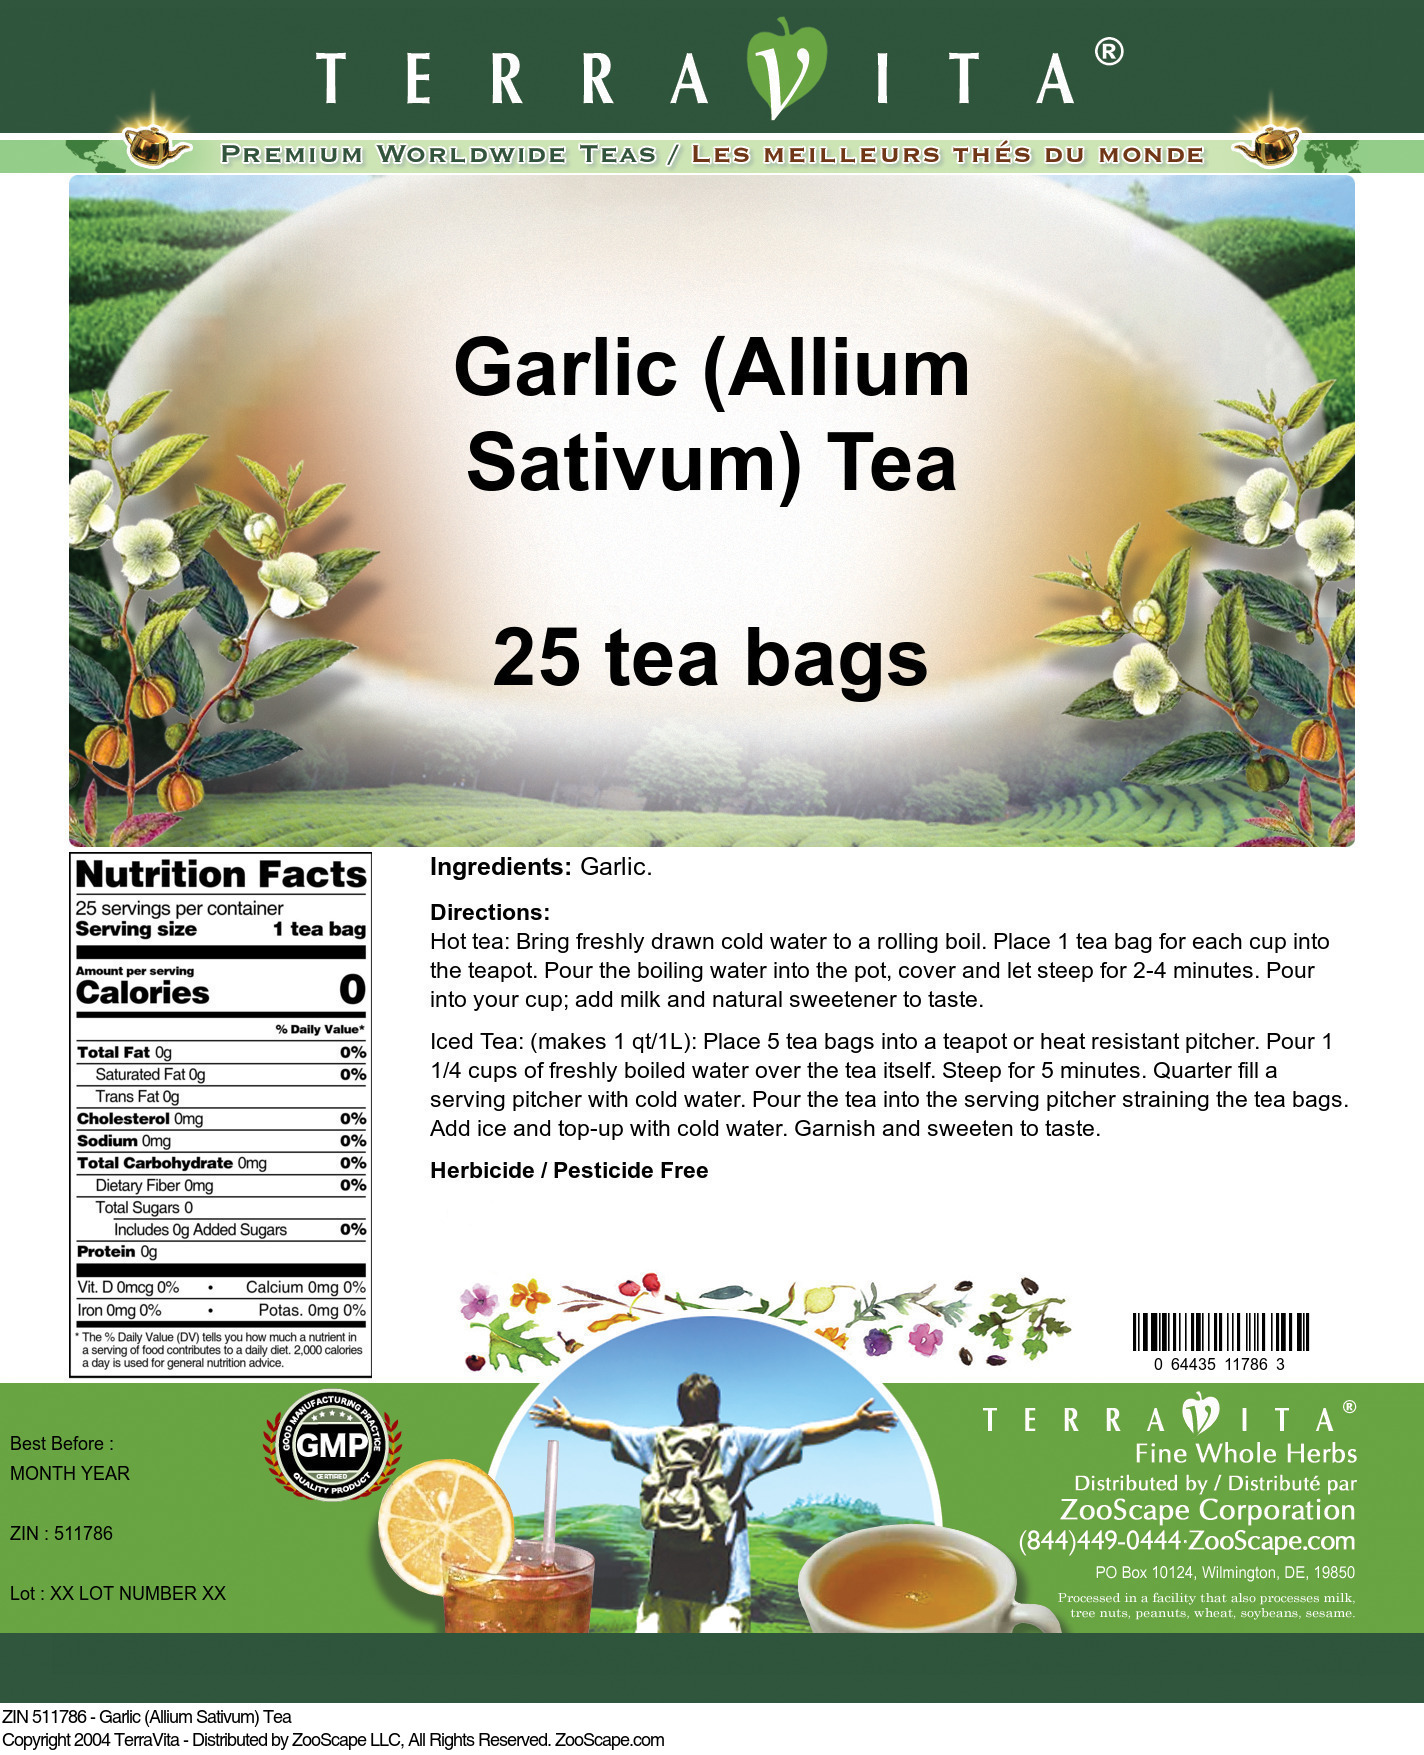 Garlic (Allium Sativum) Tea - Label